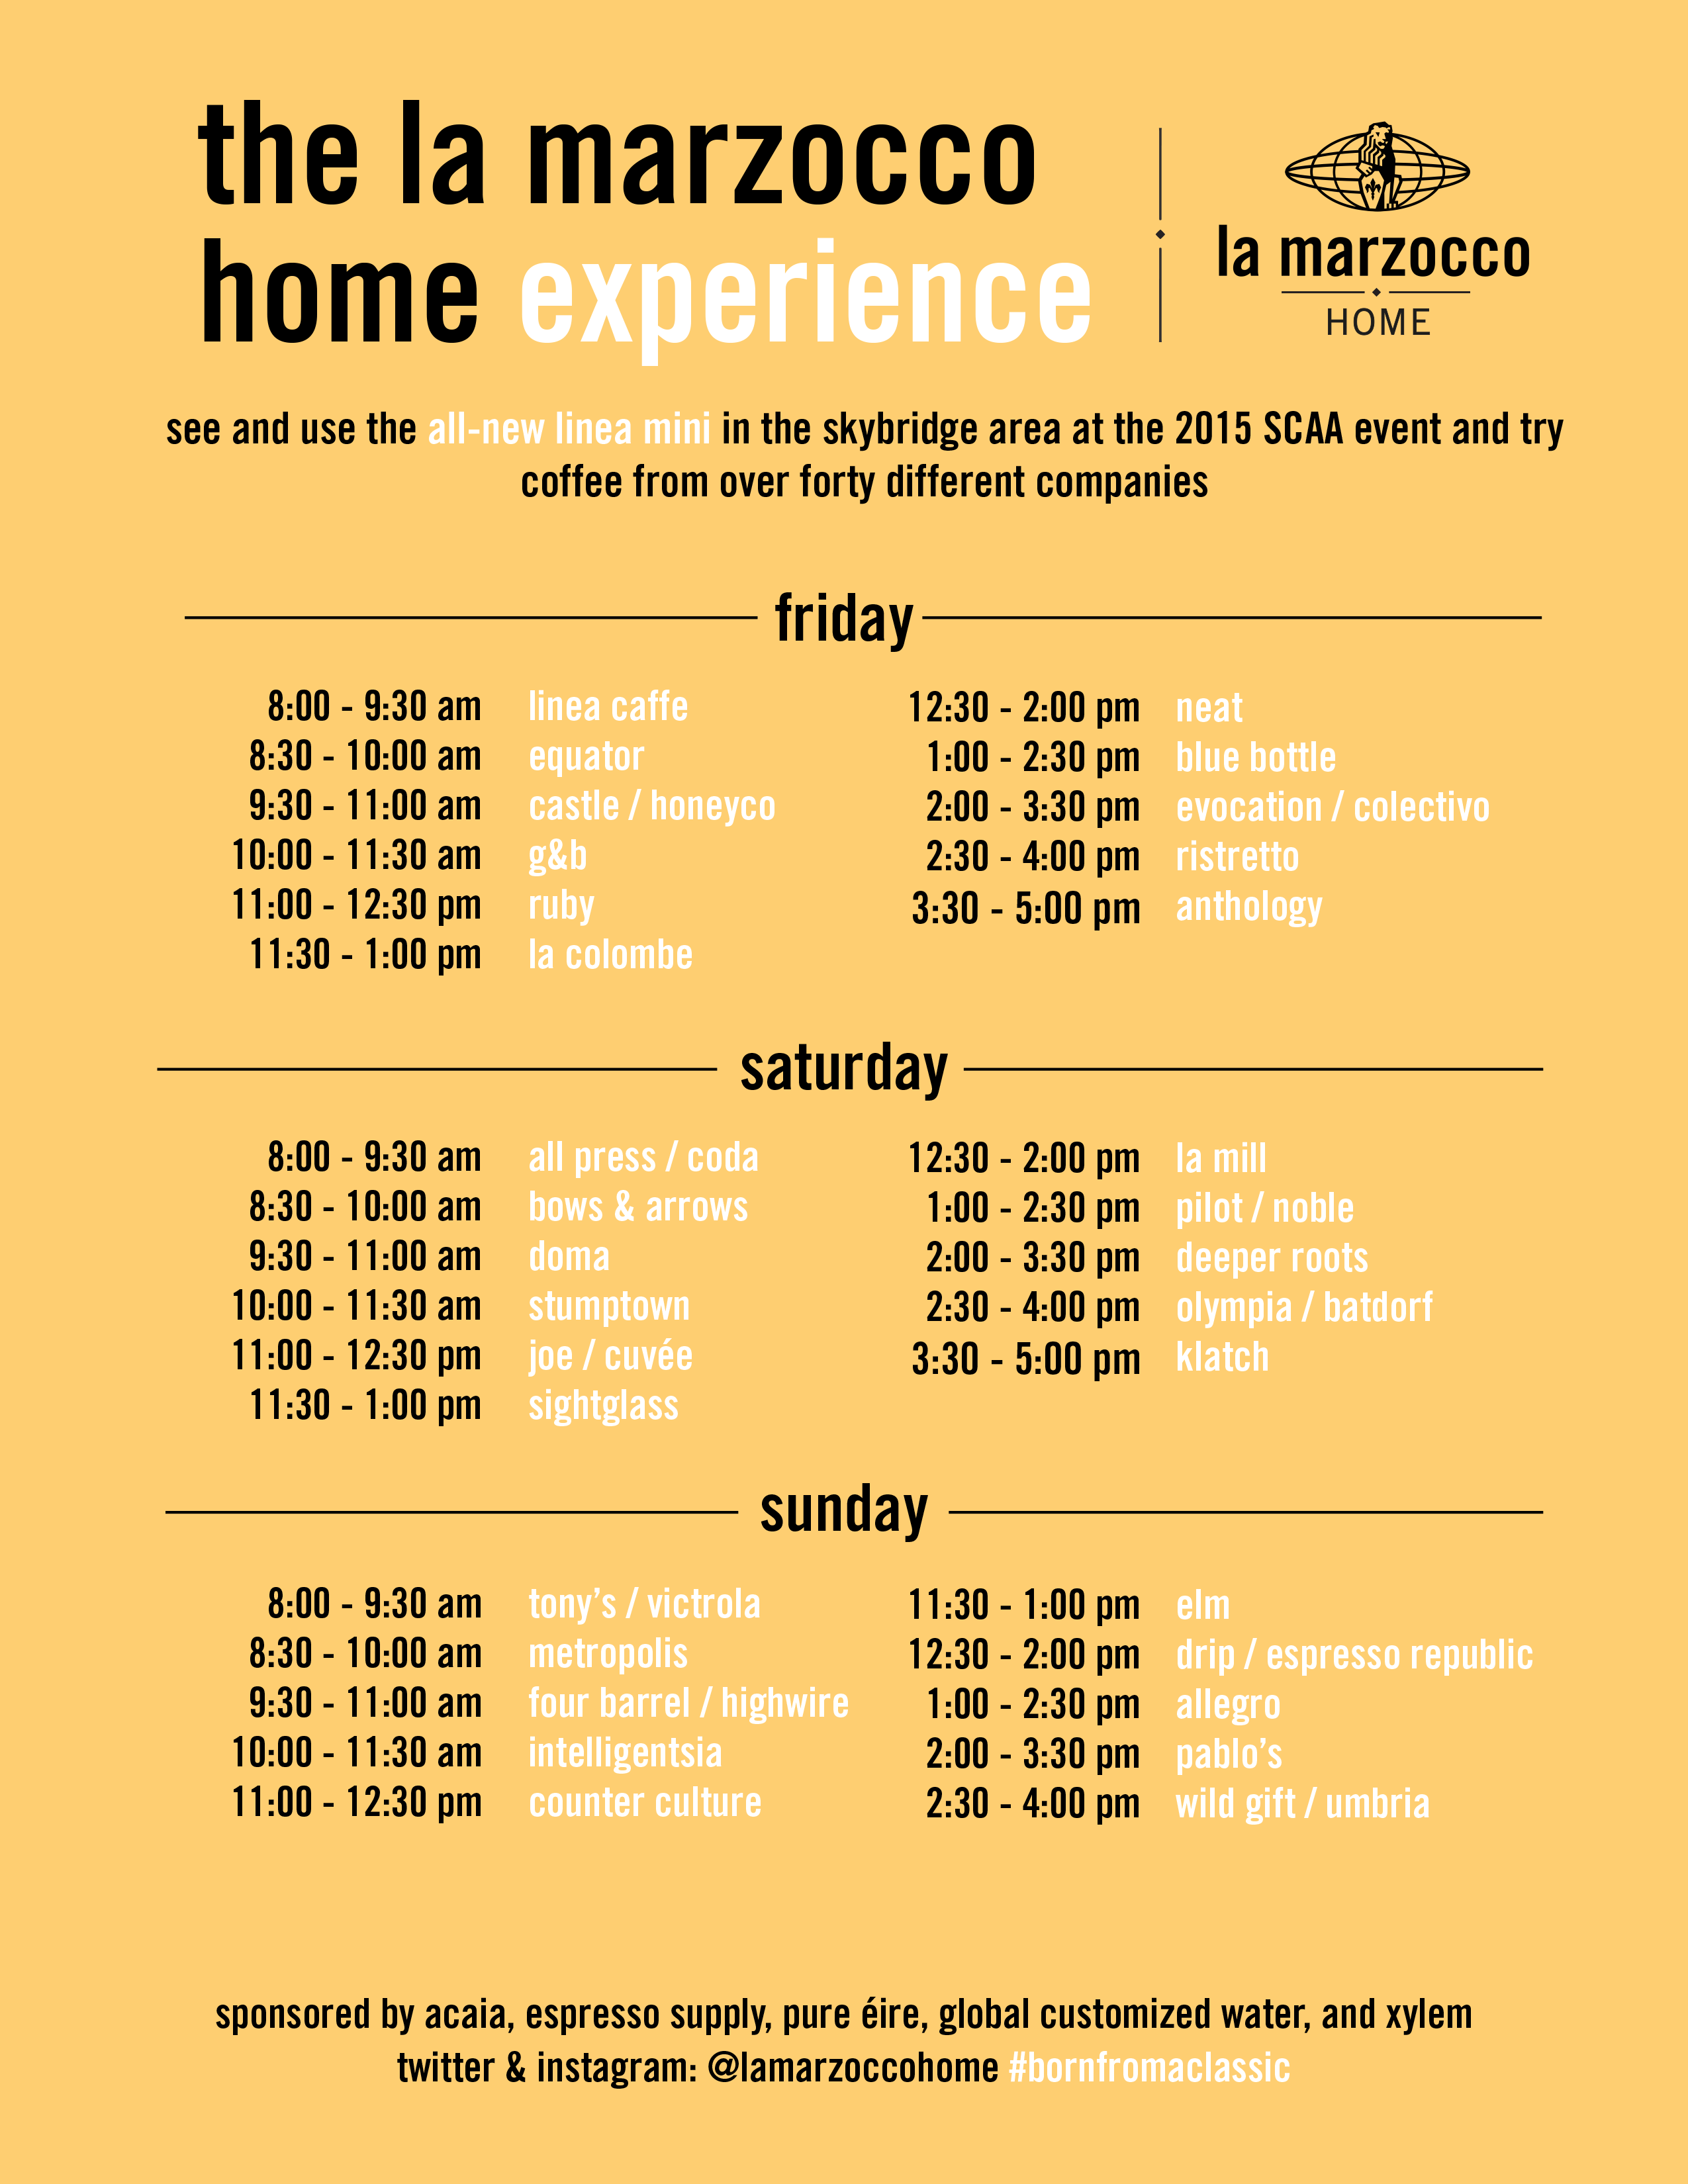 La Marzocco Home Experience Schedule